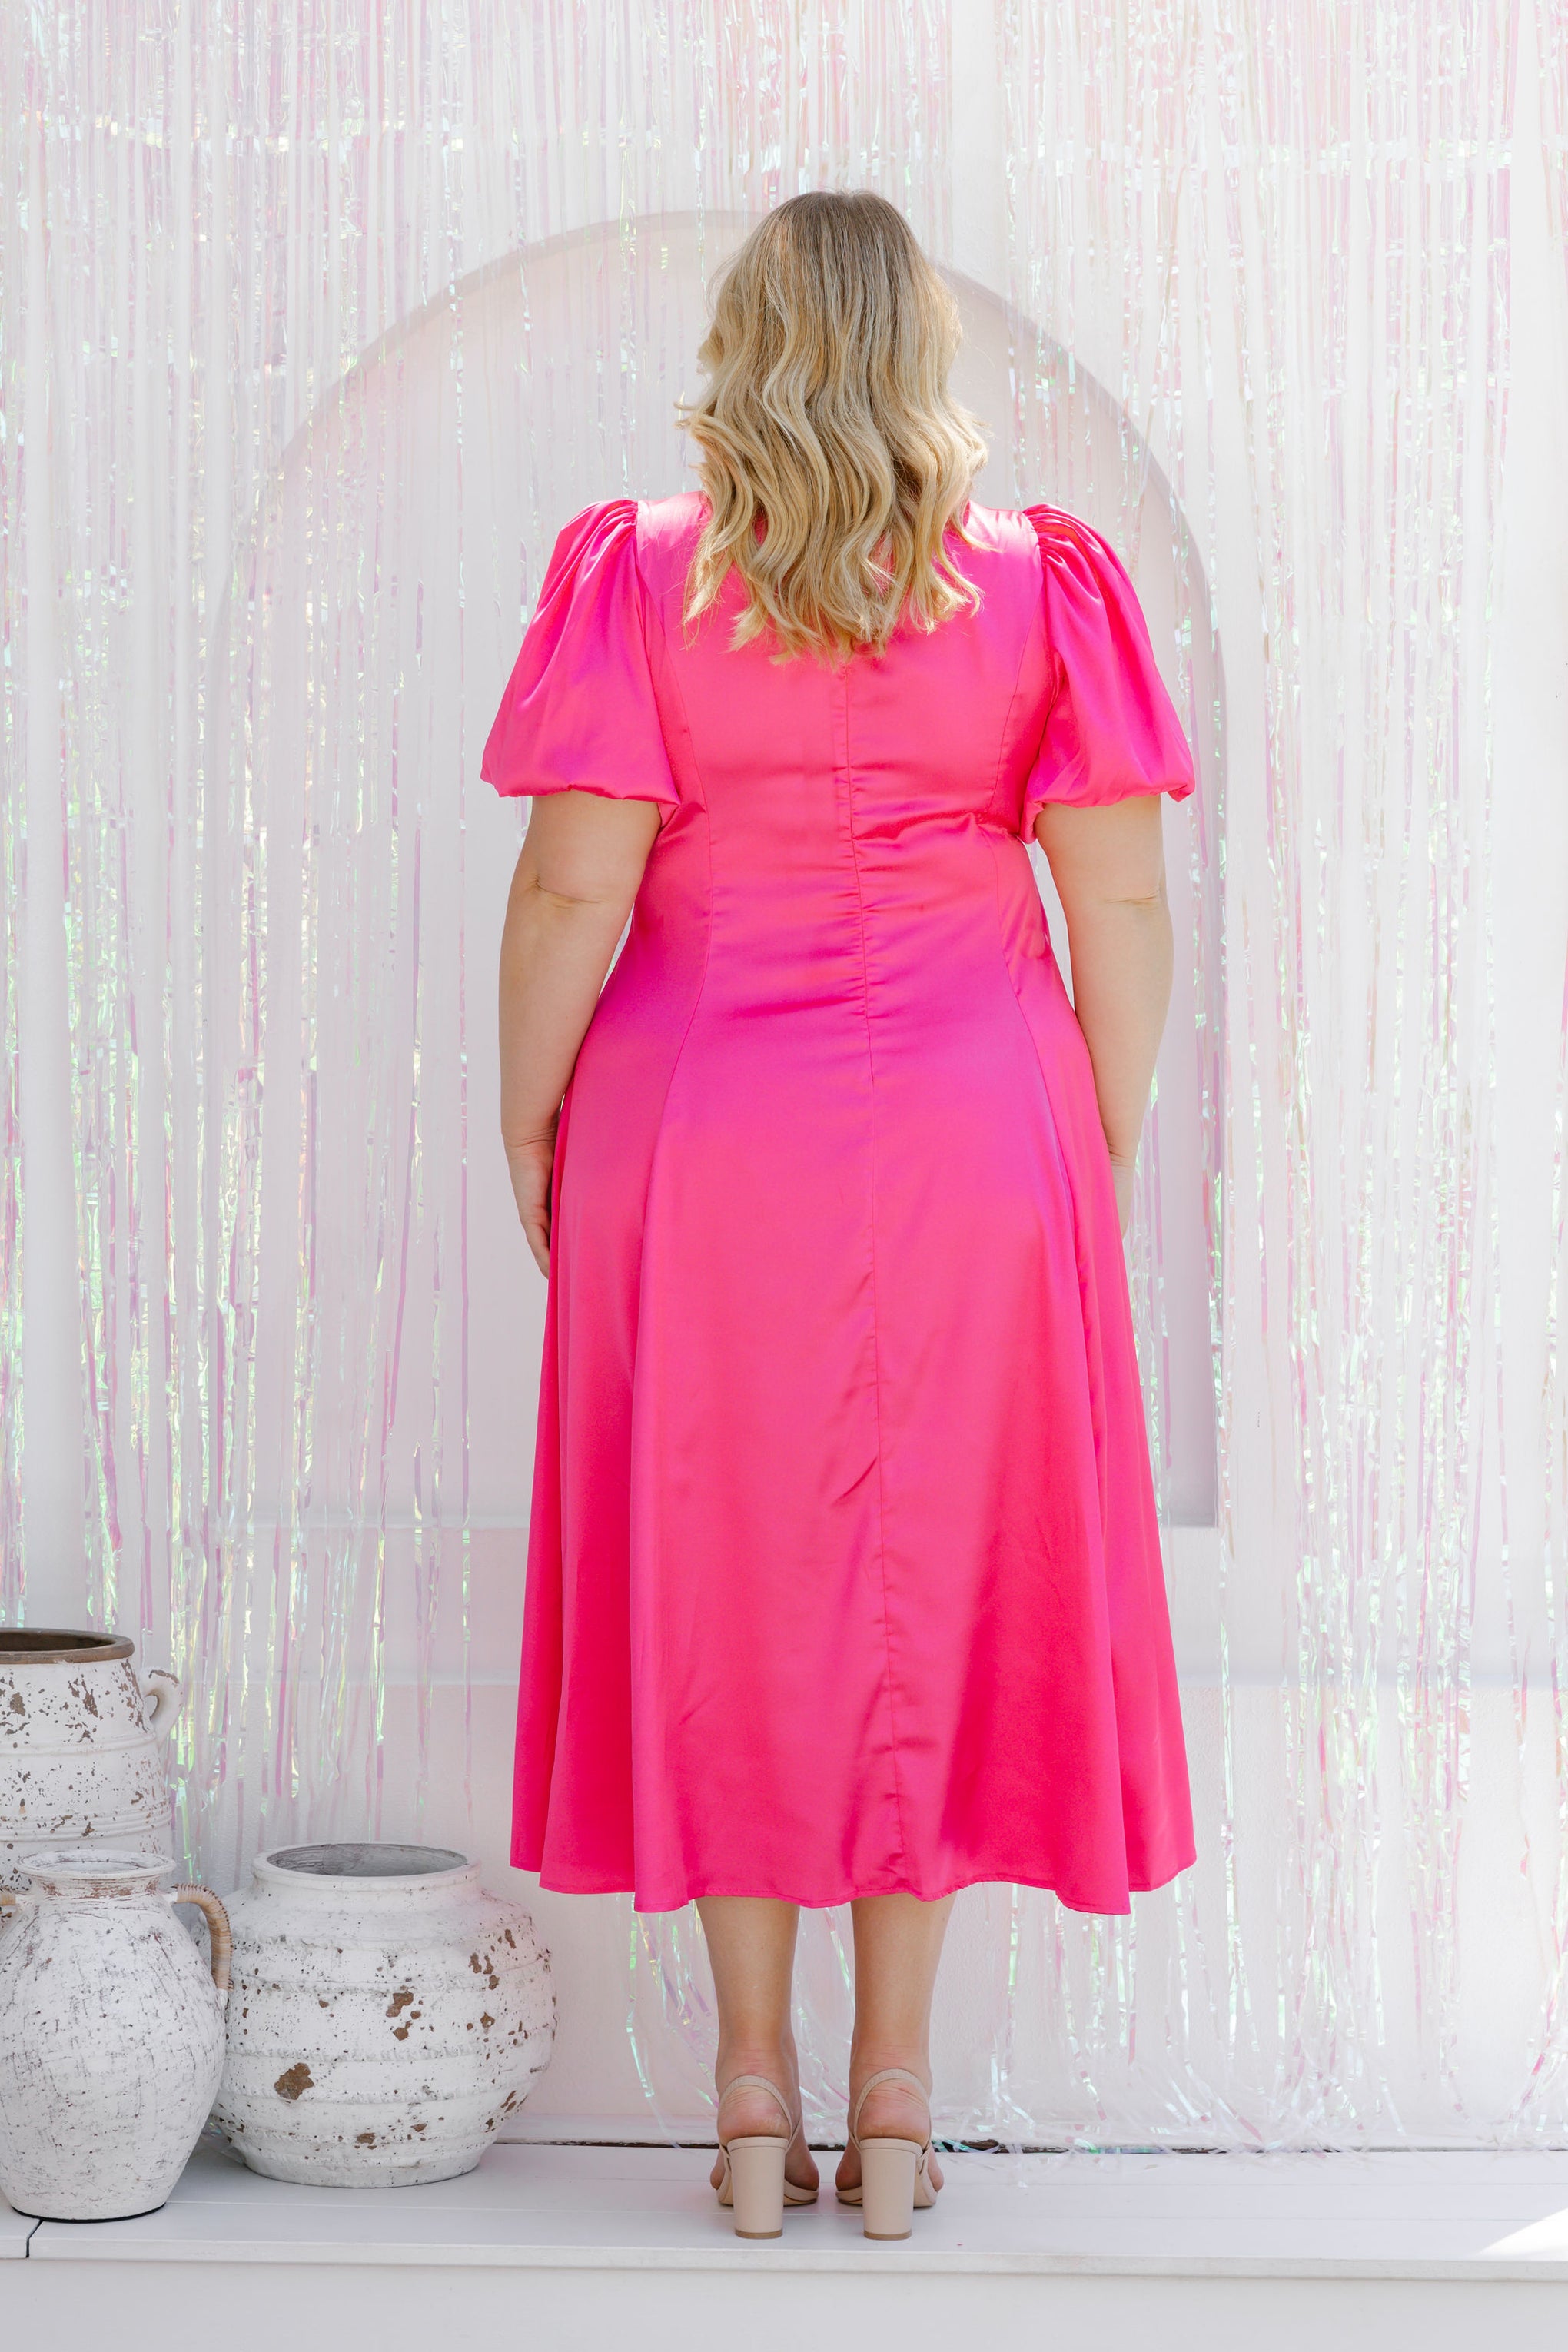 Venice Hot Pink Satin Dress